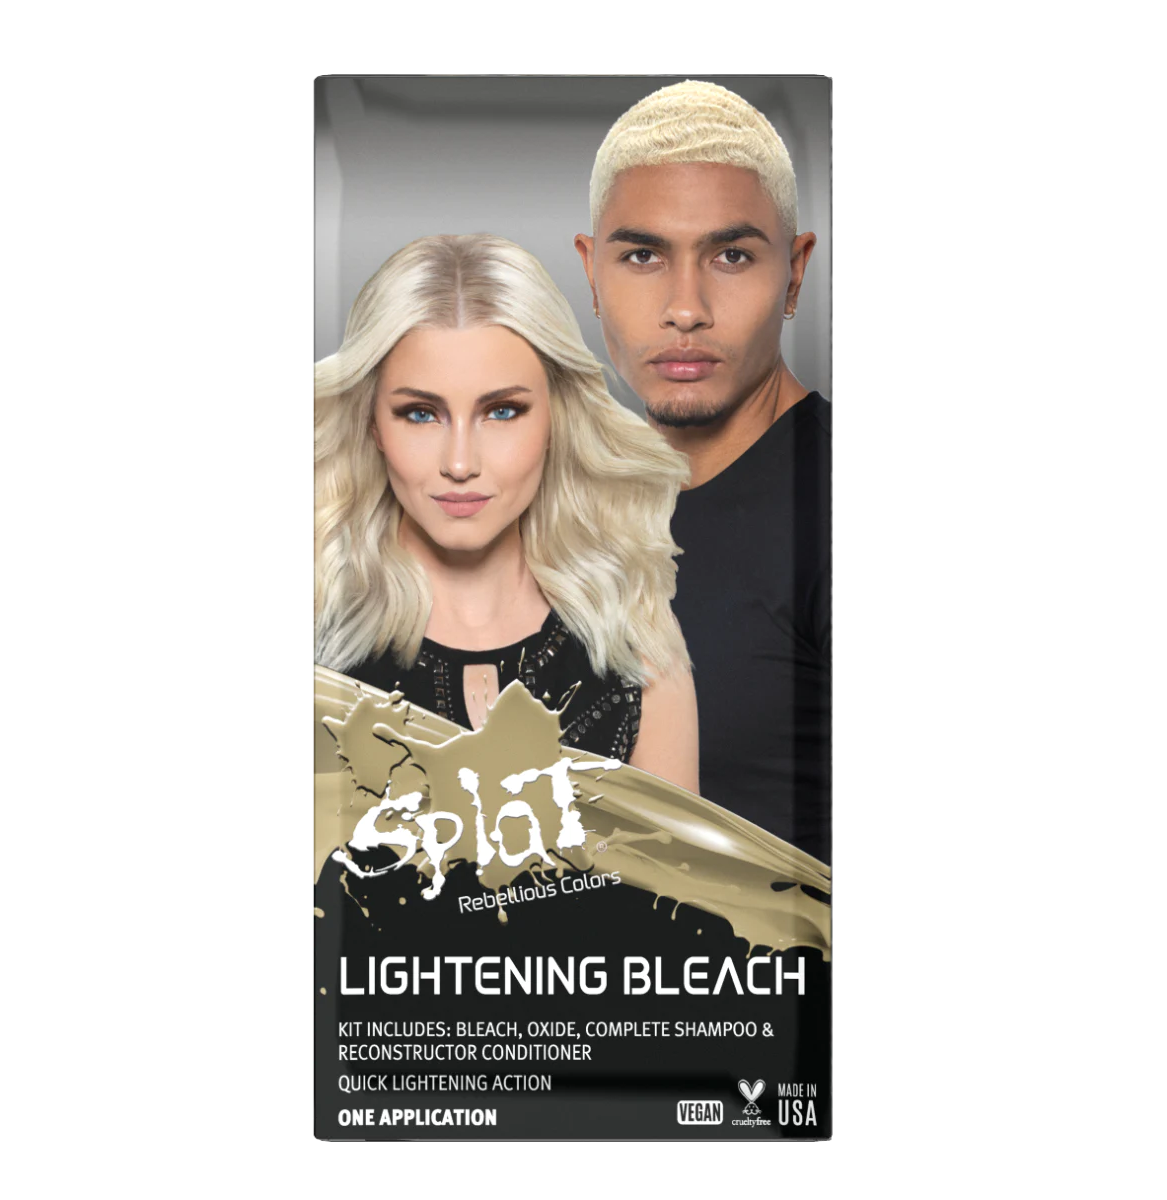 A box of Splat Hair Color's Lightening Bleach Hair Dye